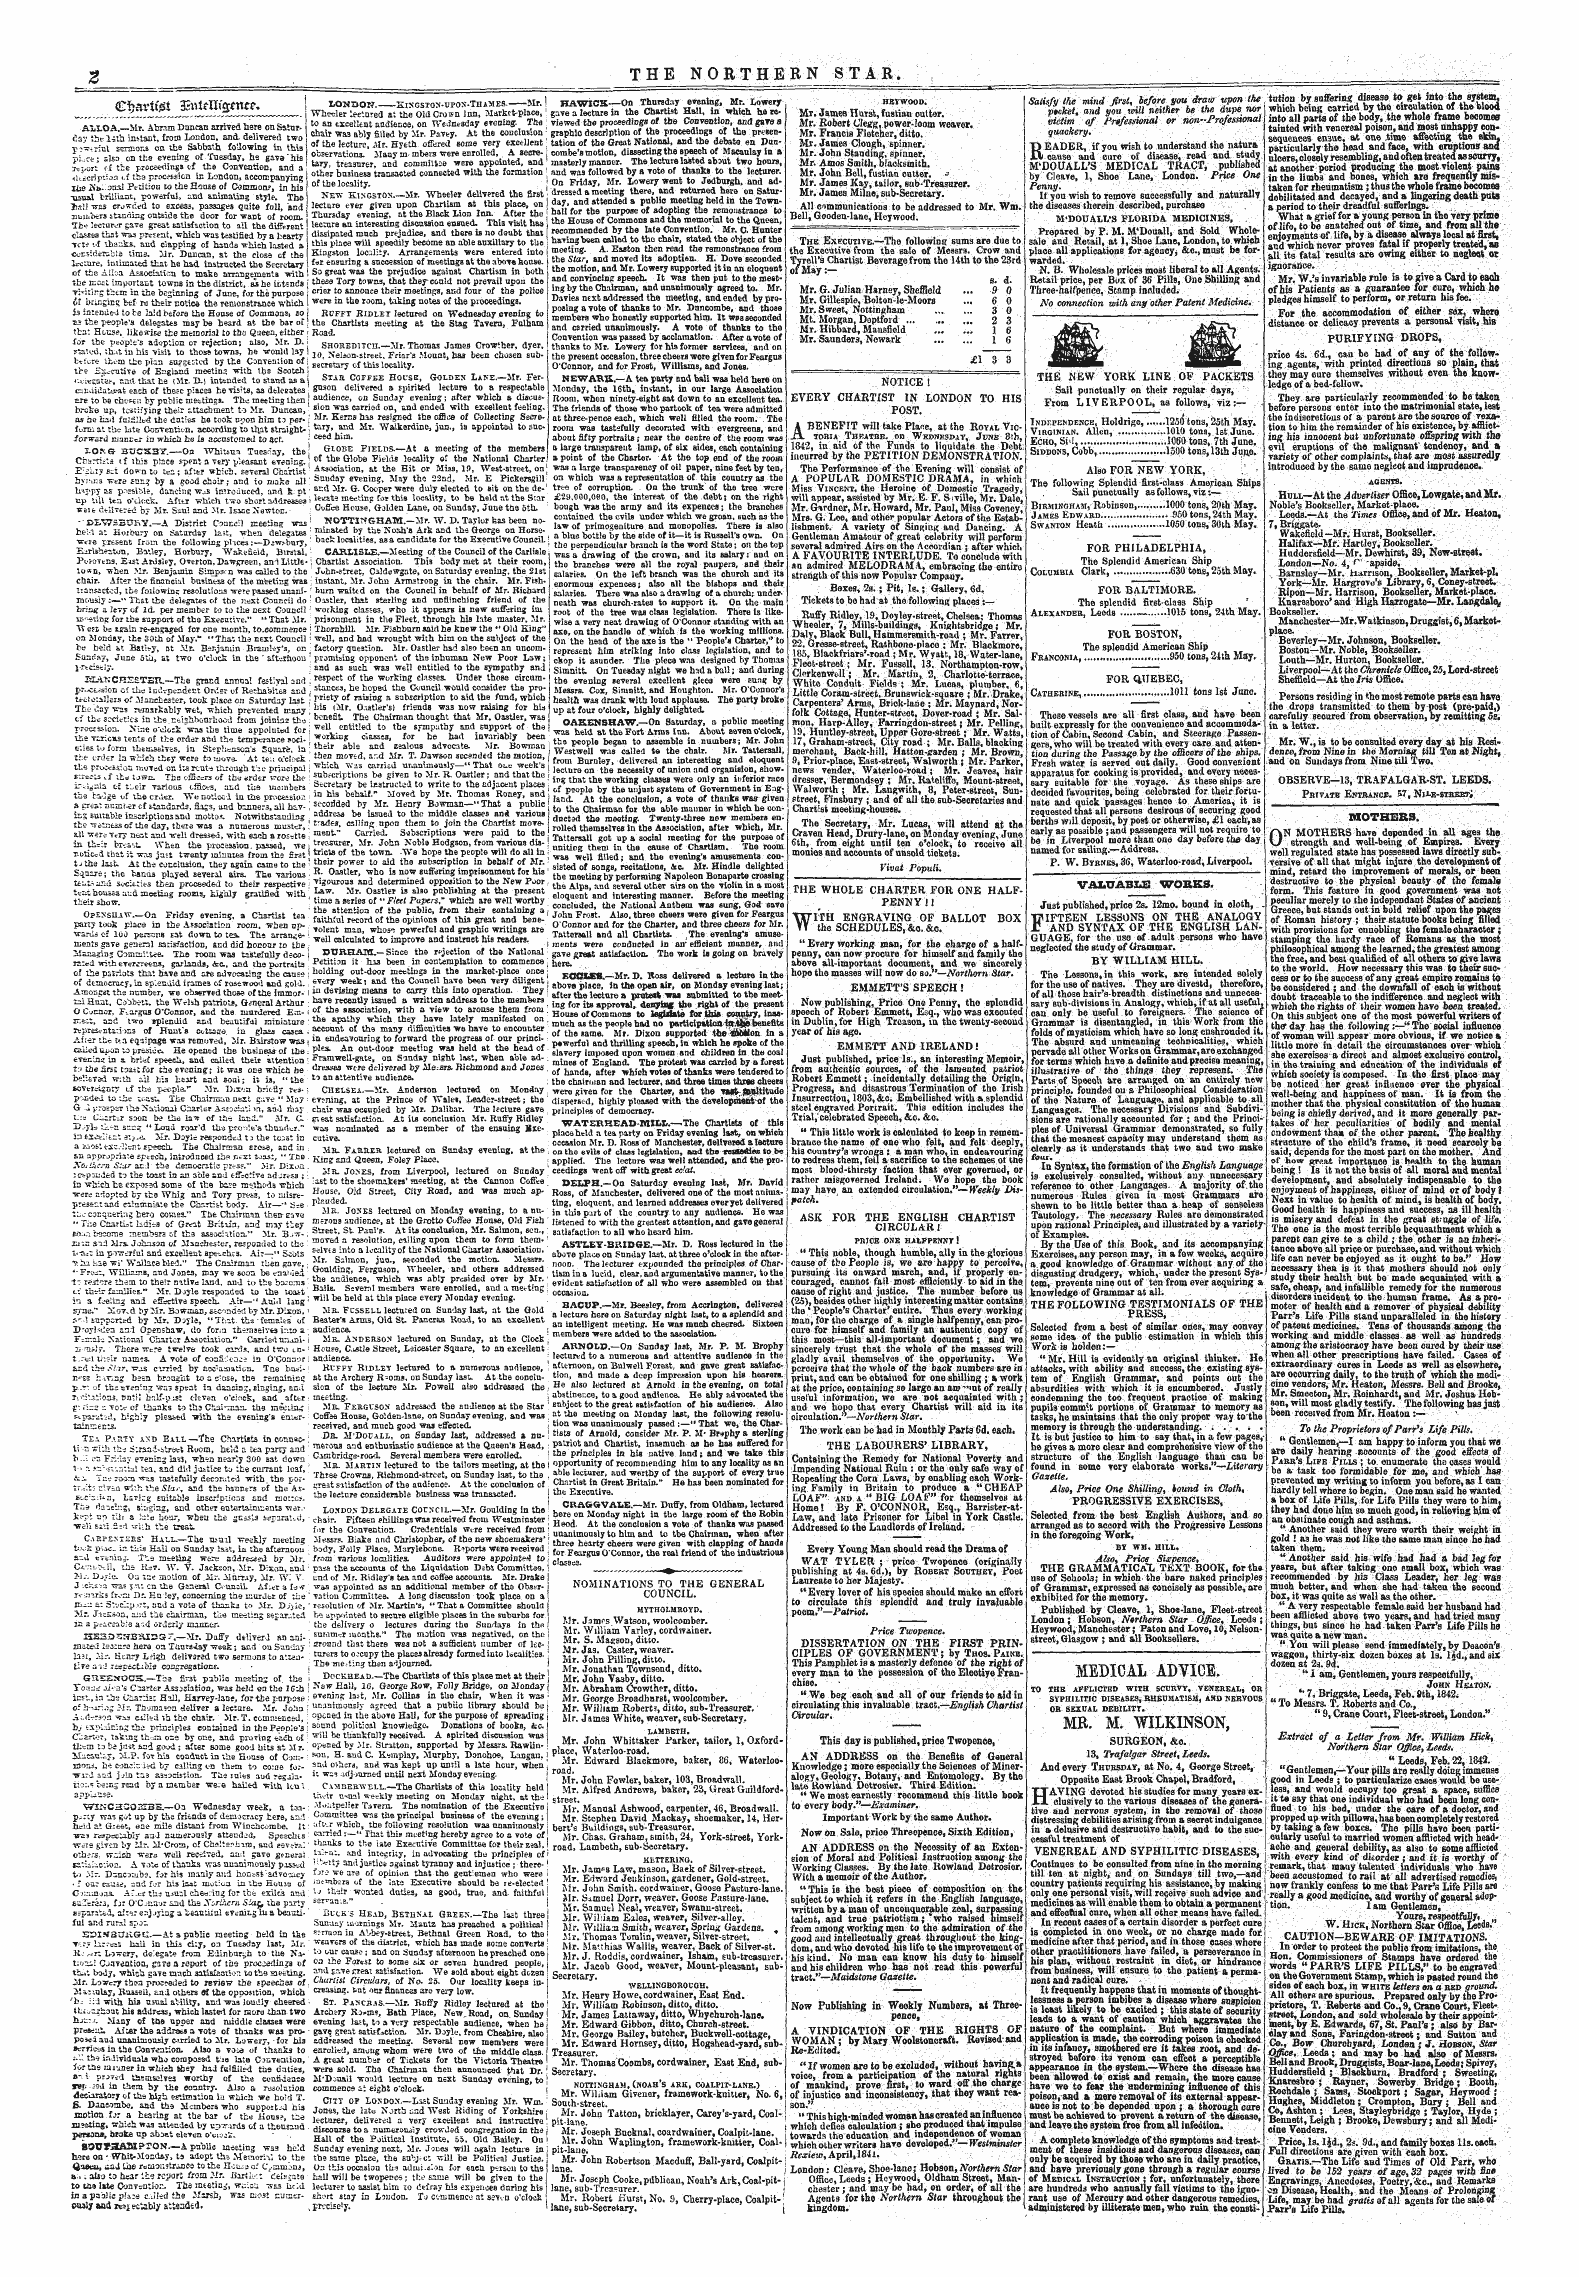 Northern Star (1837-1852): jS F Y, 2nd edition - &Lt;Et)Srit0i Entelksenc*.